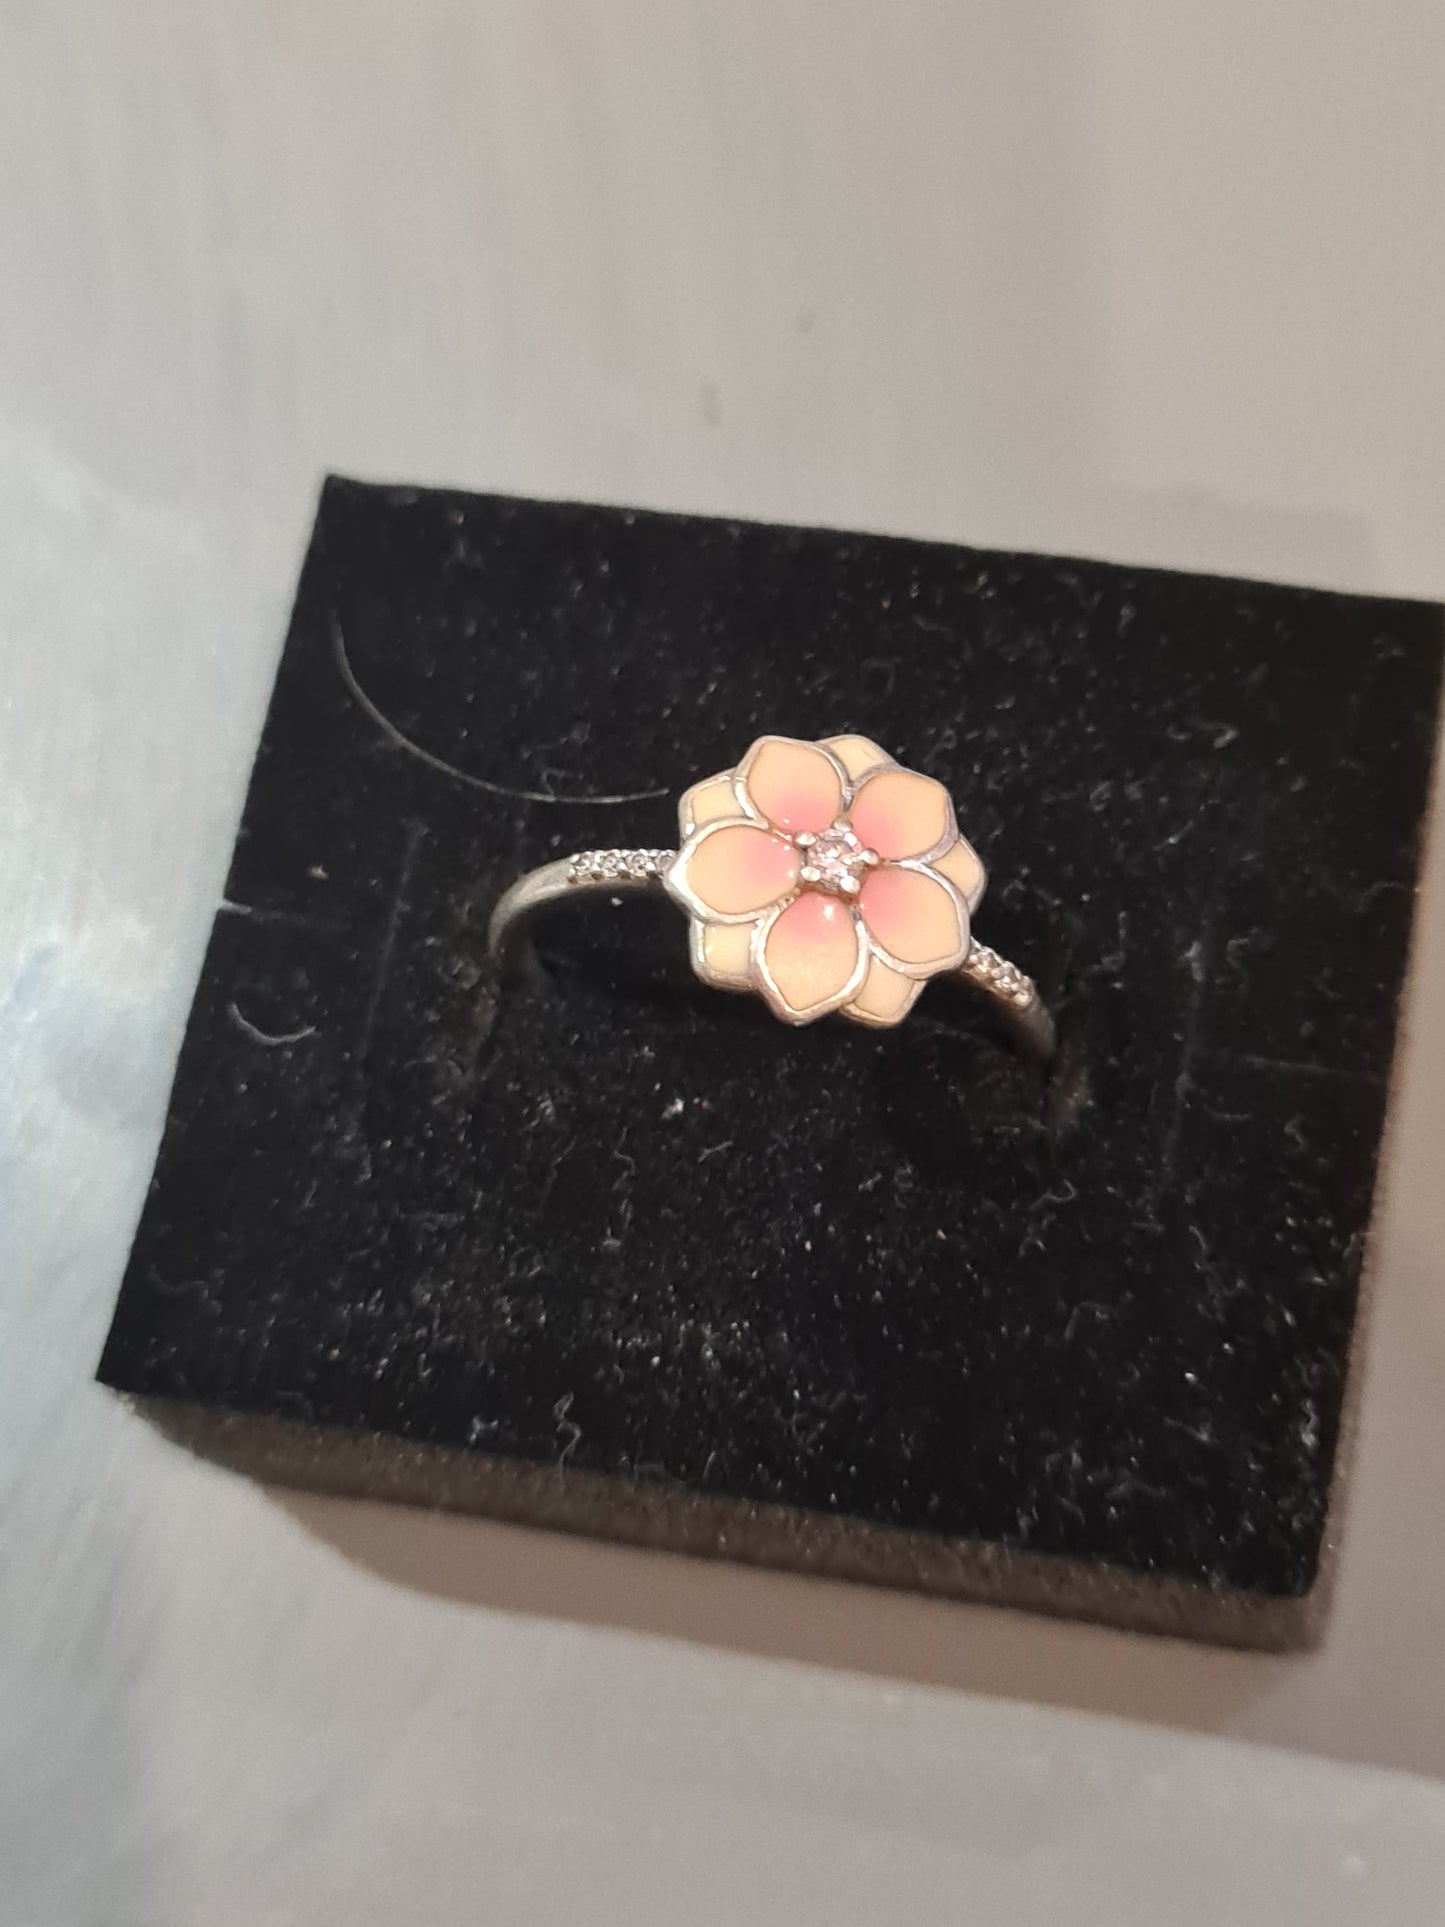 Genuine Pandora Blooming Magnolia Flower Ring Size 58